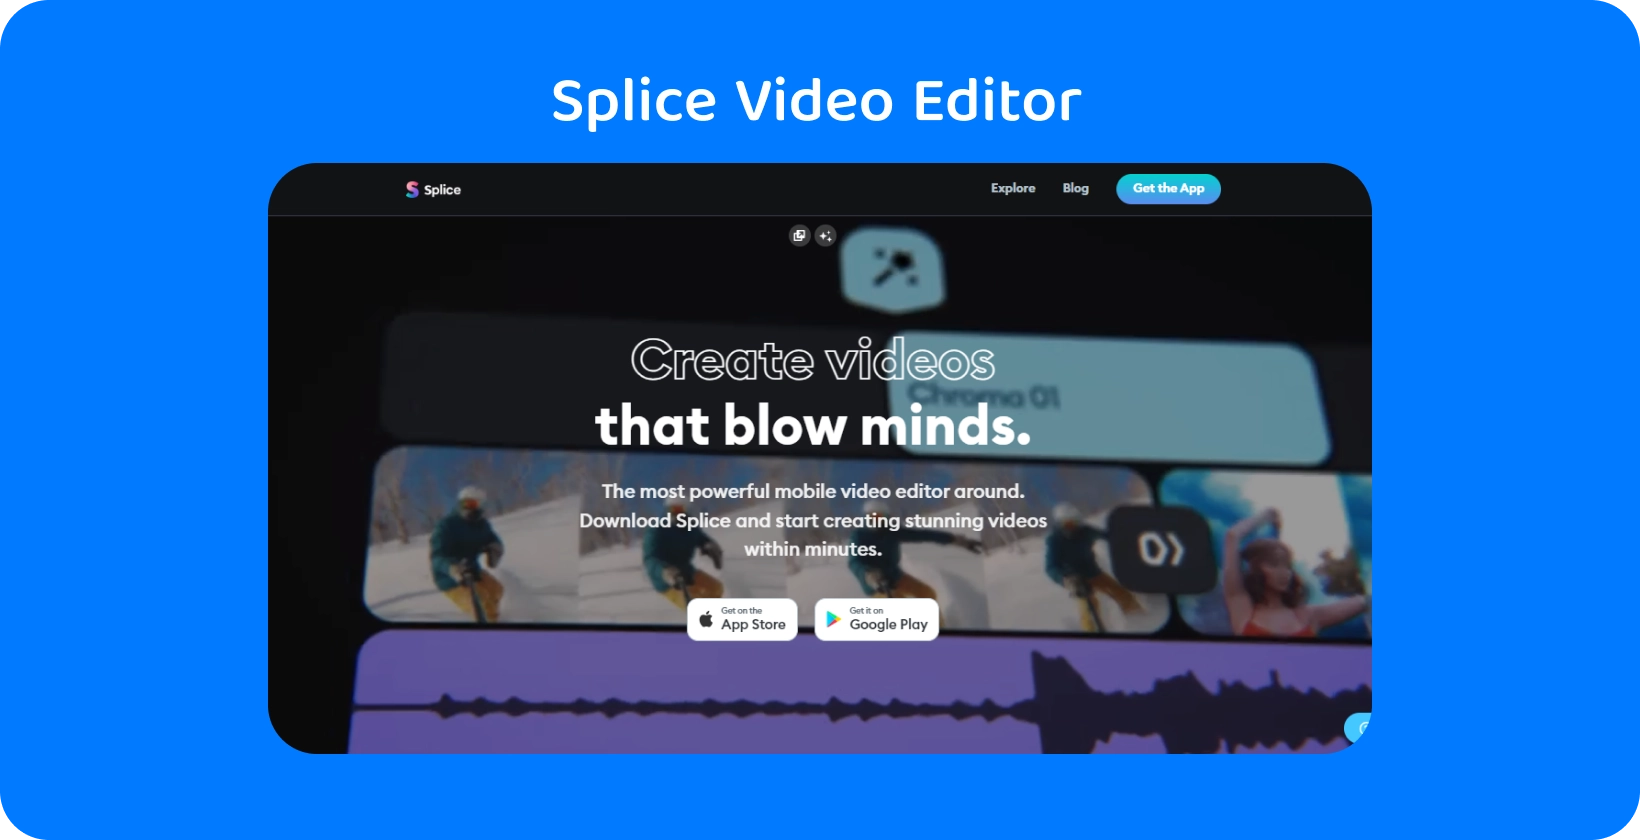 Splice rakenduse reklaamimist nutitelefonis, reklaamides seda kui kõige võimsamat mobiilivideoredaktorit vapustavate videote loomiseks.